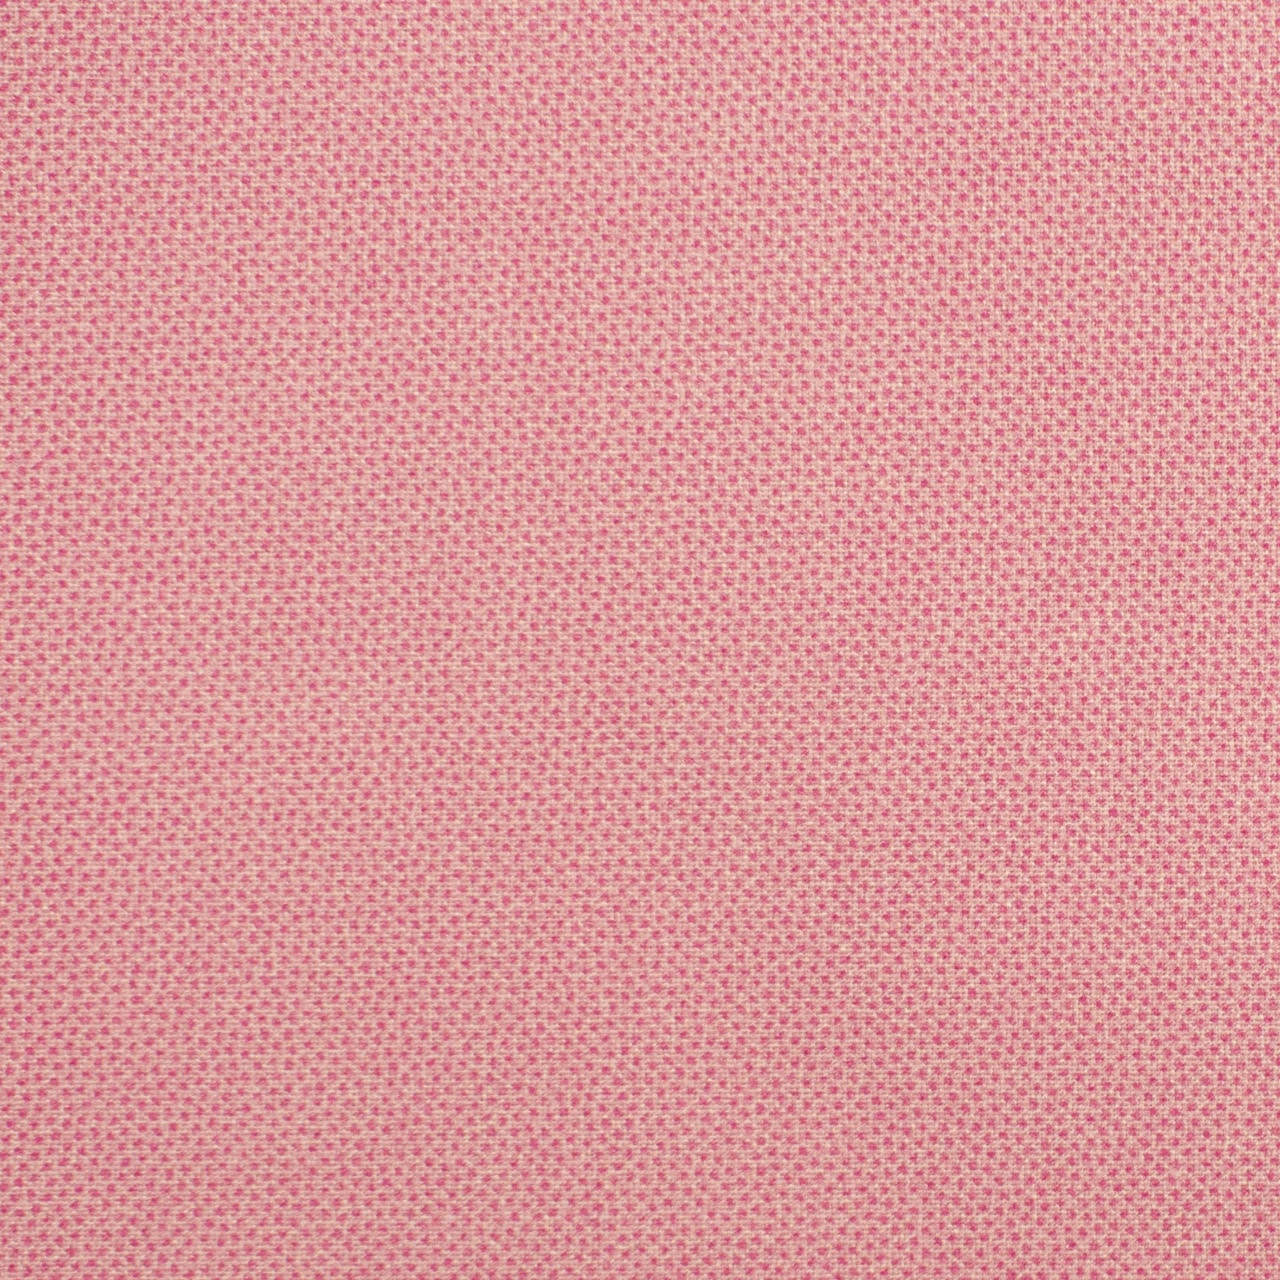 Pindot (Pink) - HALF METRE